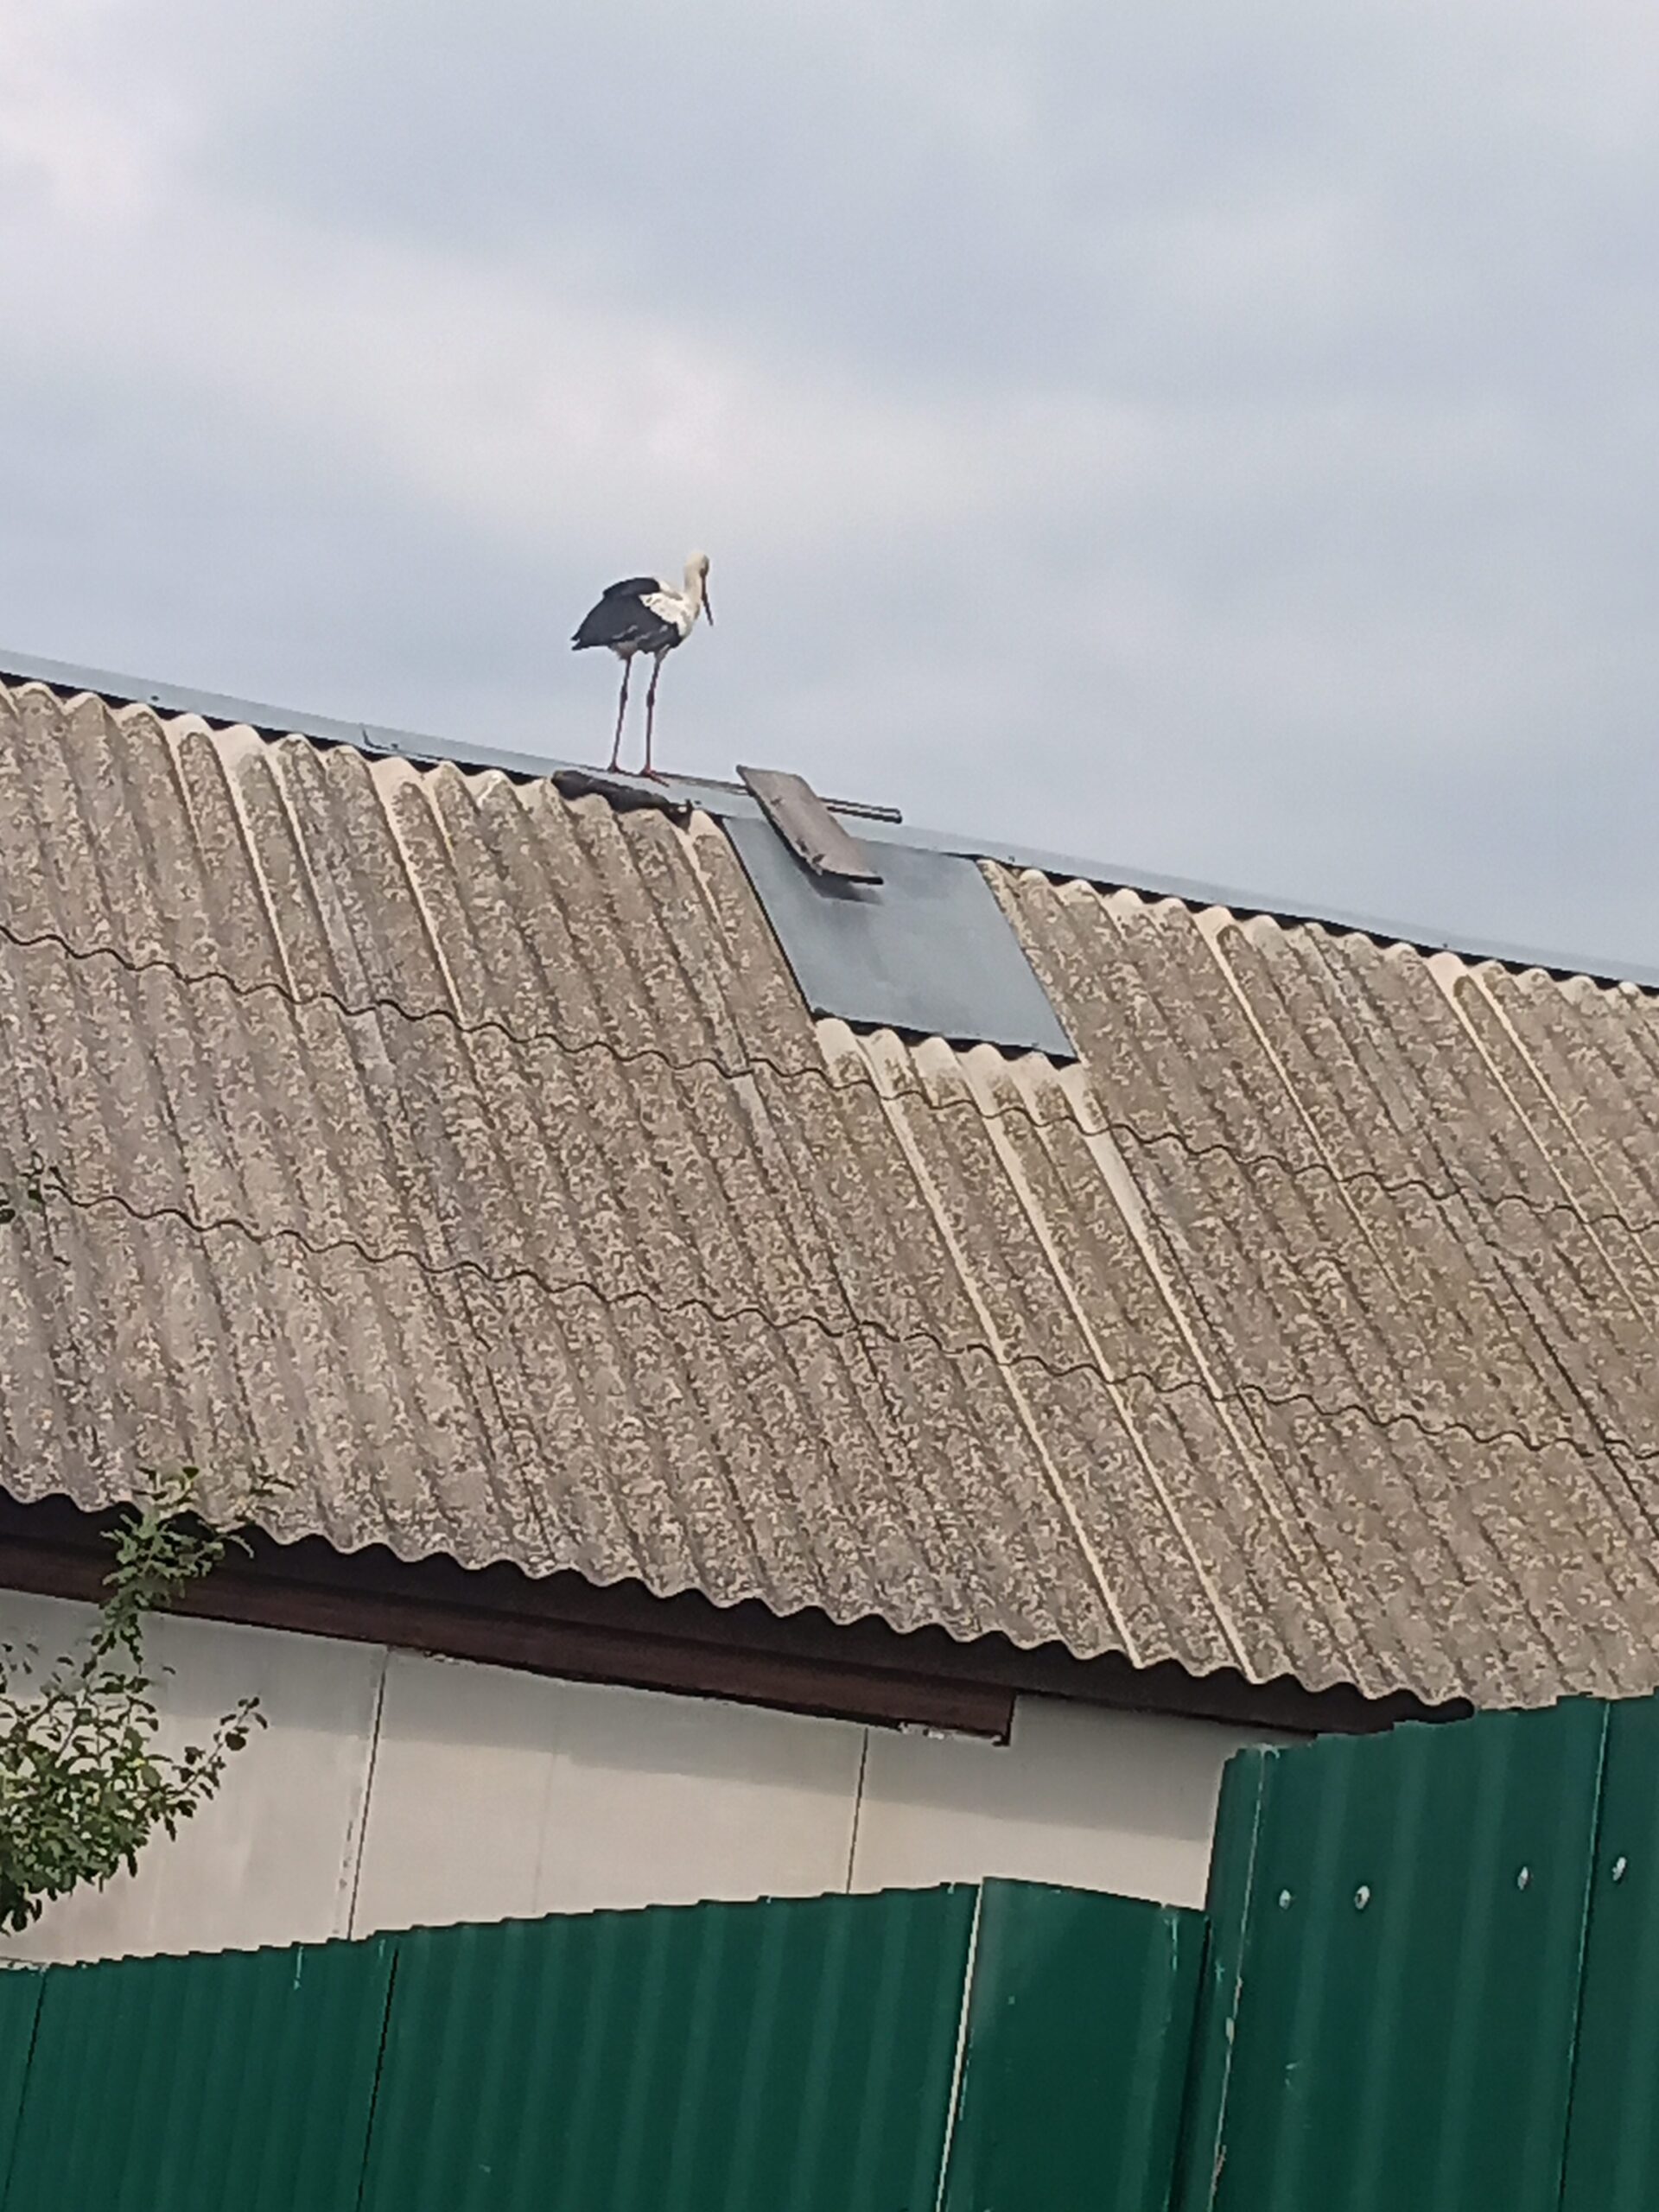 «День без еды». В Новозыбкове сегодня на крыше «засел» аист